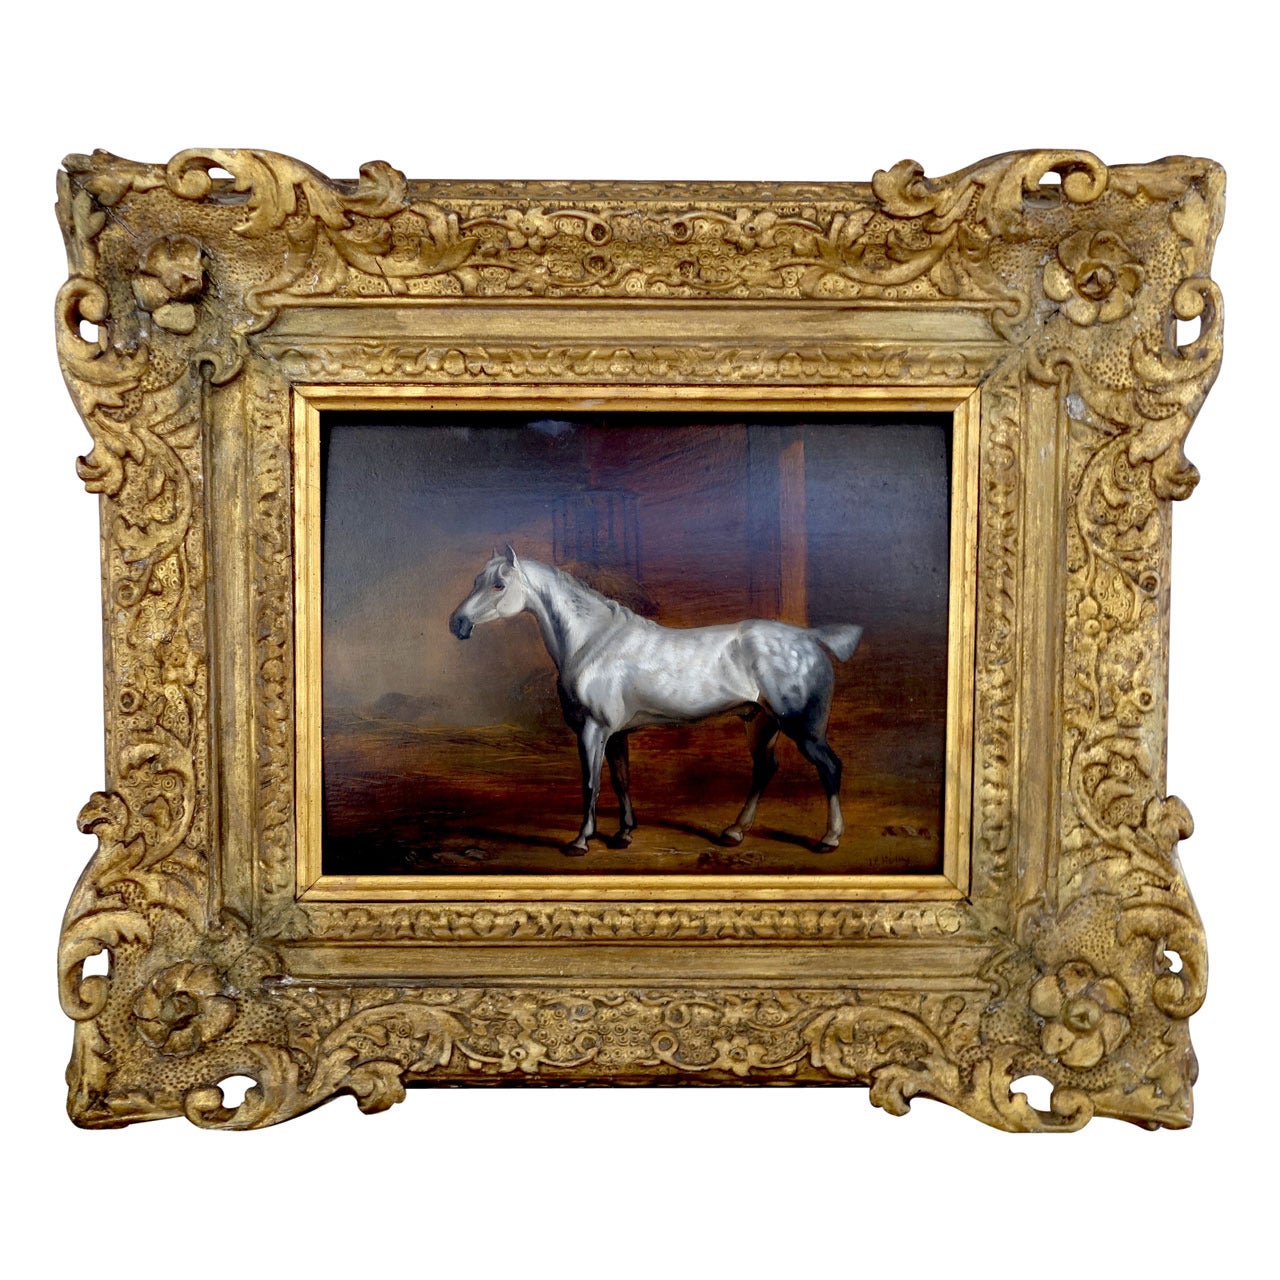 "White Horse in Stable" by John Frederick Herring Sr.